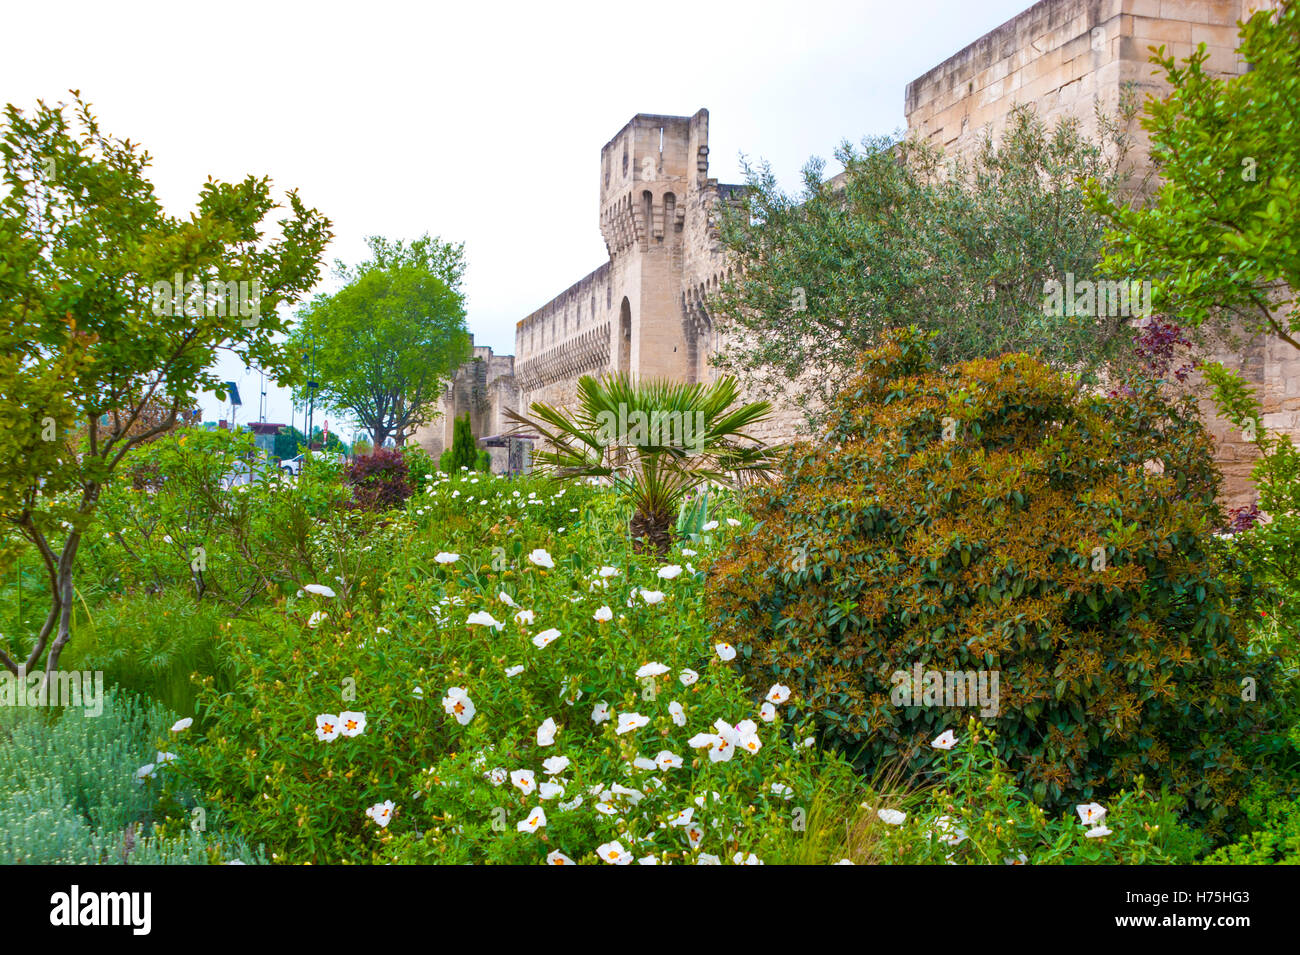 El precioso jardín verde con la muralla de Avignon en el fondo Foto de stock